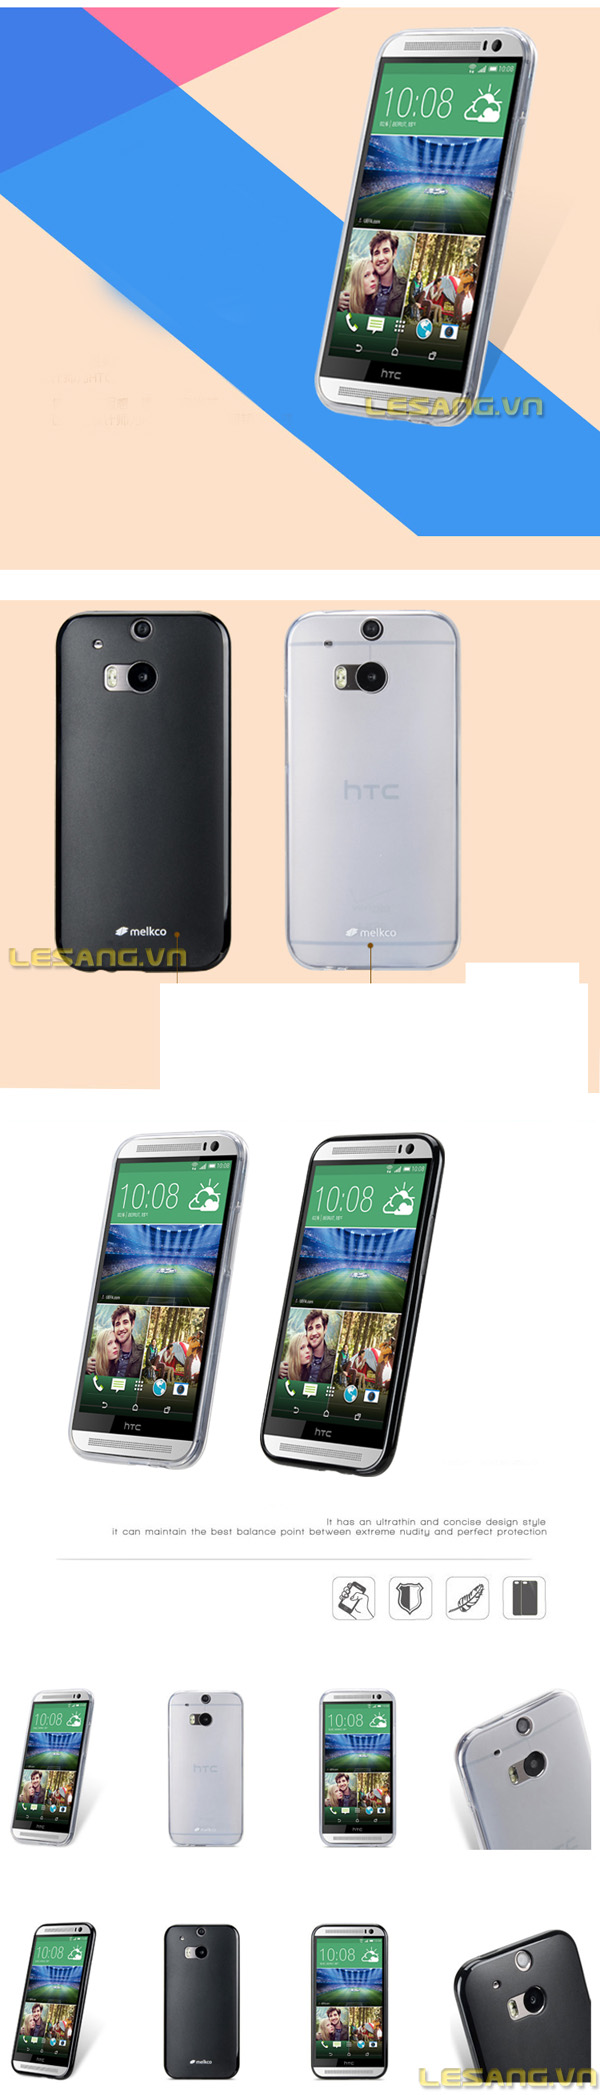 Ốp lưng HTC One M8 Melkco Poly nhựa dẻo, mỏng gọn
 - 5